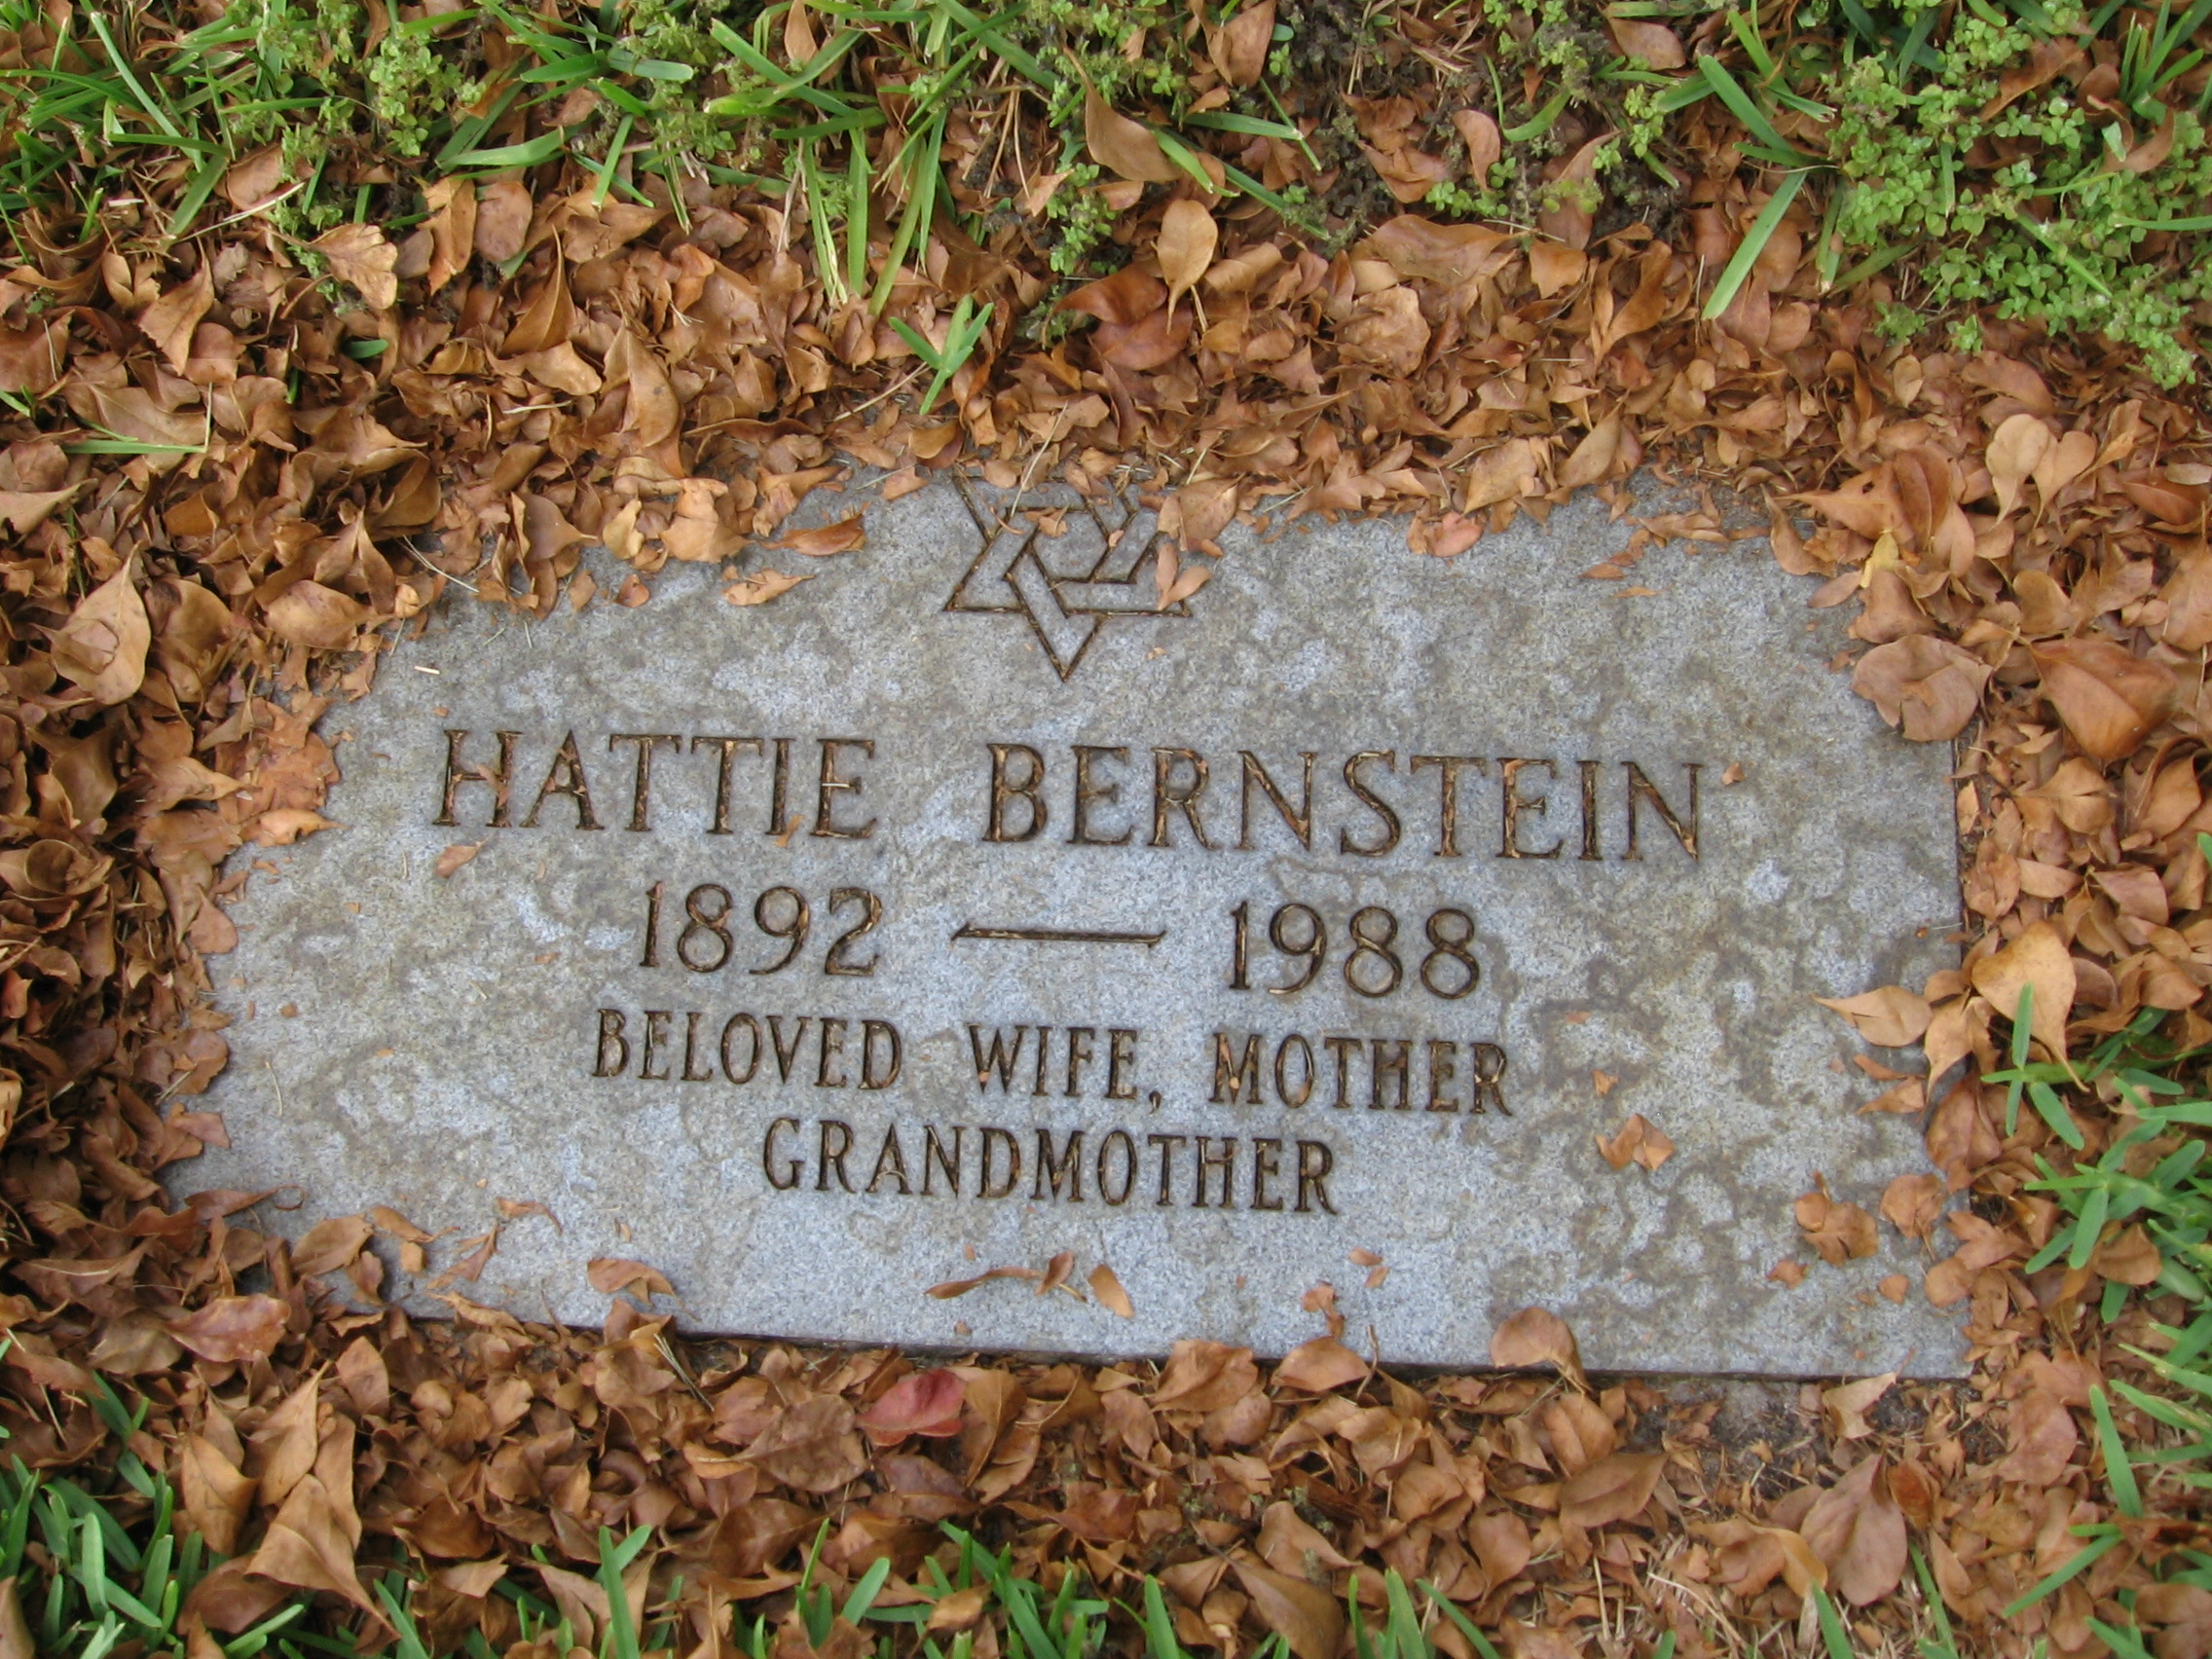 Hattie Bernstein